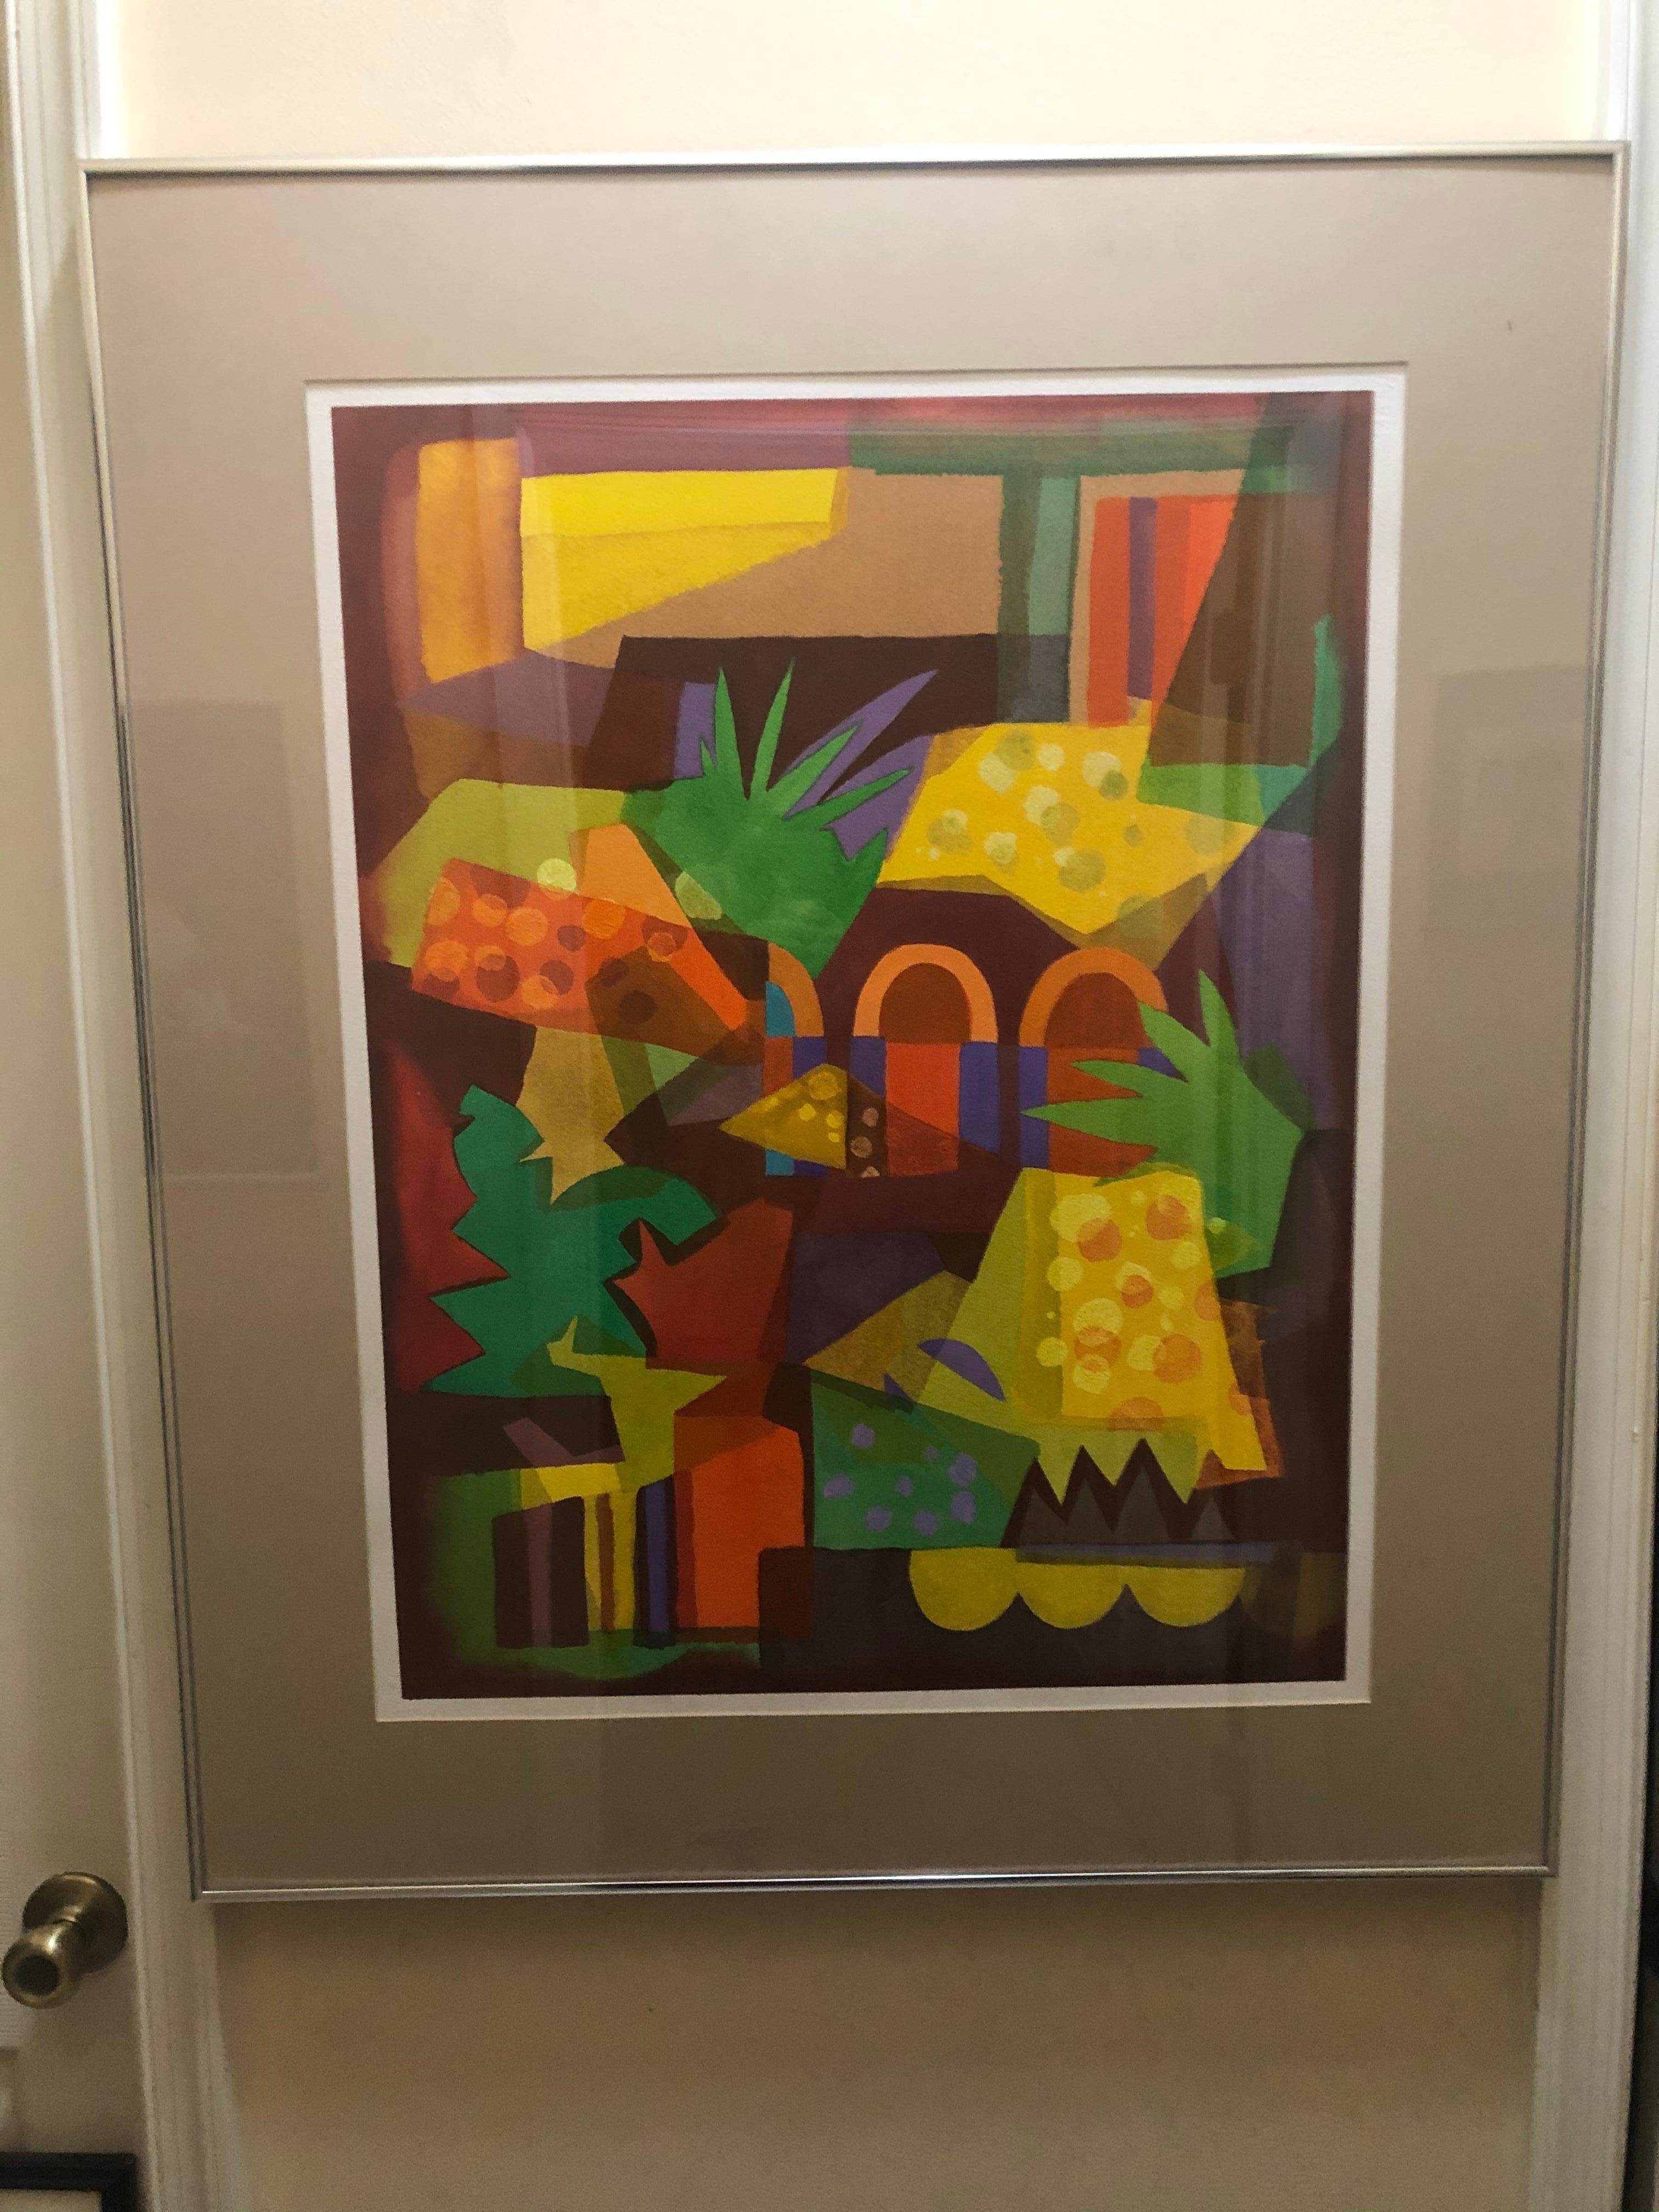 Frank Goodnow: 1923-2004. Aufgeführter amerikanischer Künstler und Professor an der Syracuse University. Prächtige Farben in diesem selten erhältlichen Gemälde von Frank Goodnow. Es ist im kubistischen Stil gehalten. Es misst 27 Zoll hoch durch 21